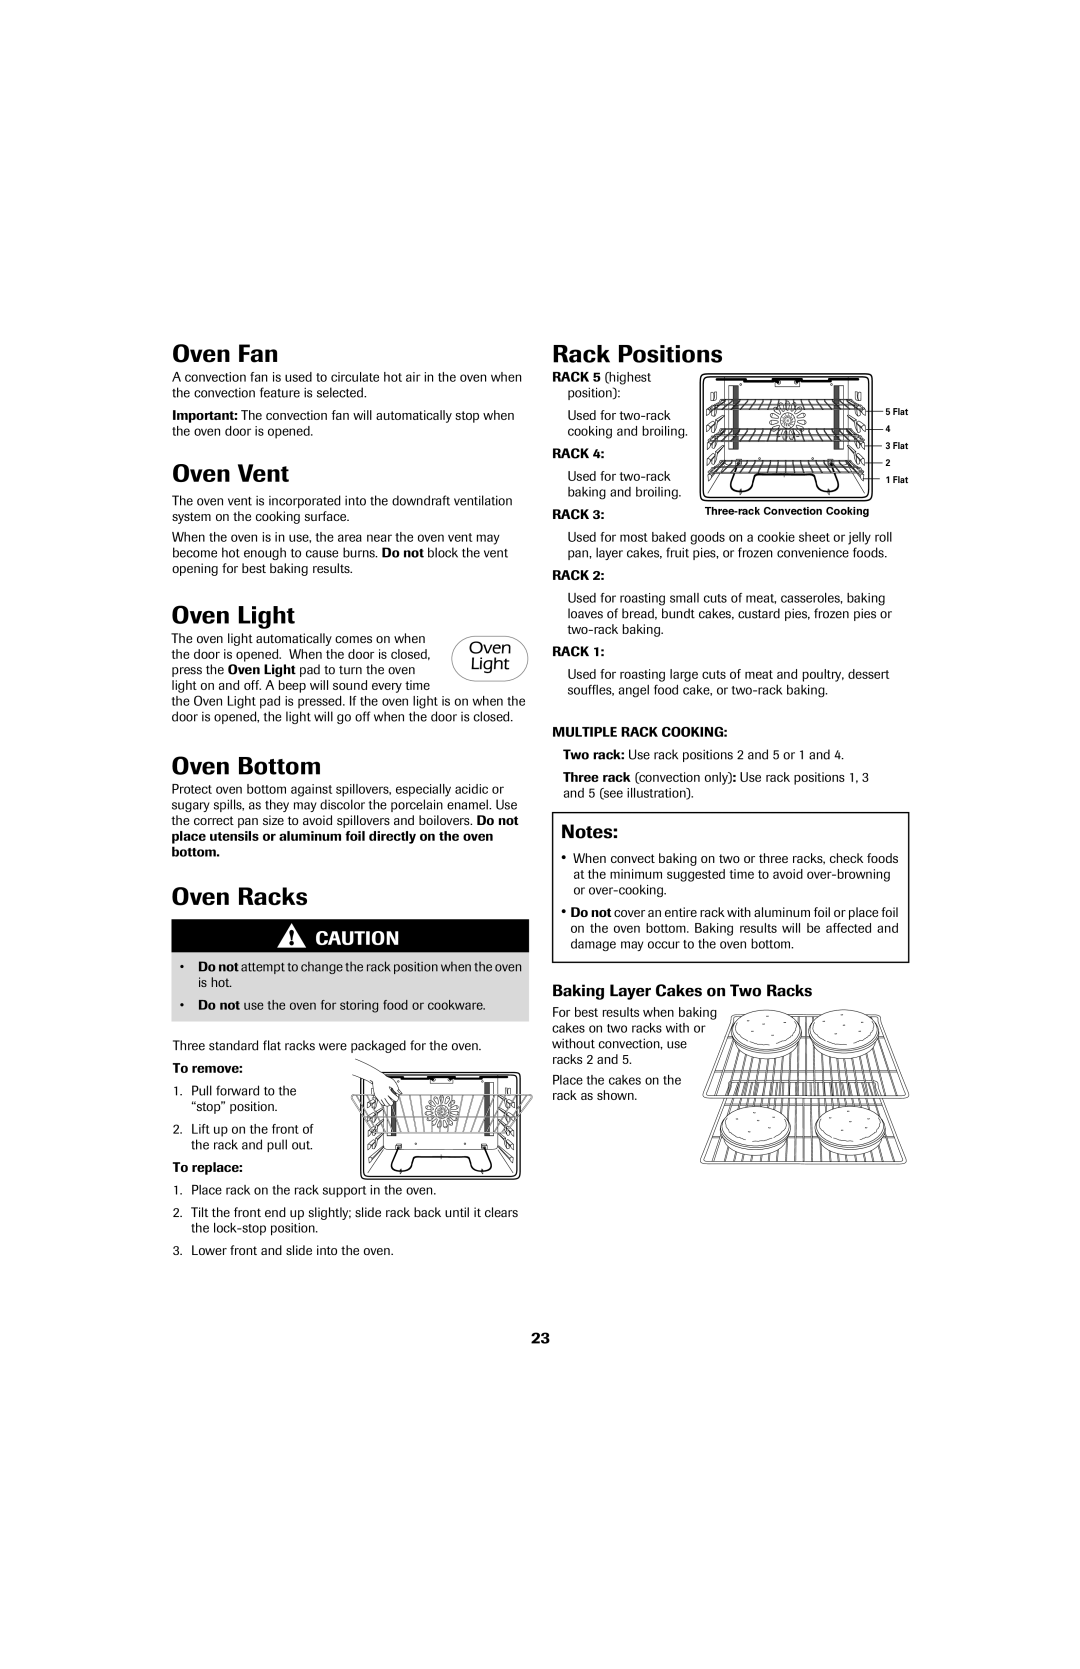 Jenn-Air 8113P753-60 Oven Fan, Oven Vent, Oven Bottom, Oven Racks, Rack Positions, Baking Layer Cakes on Two Racks 